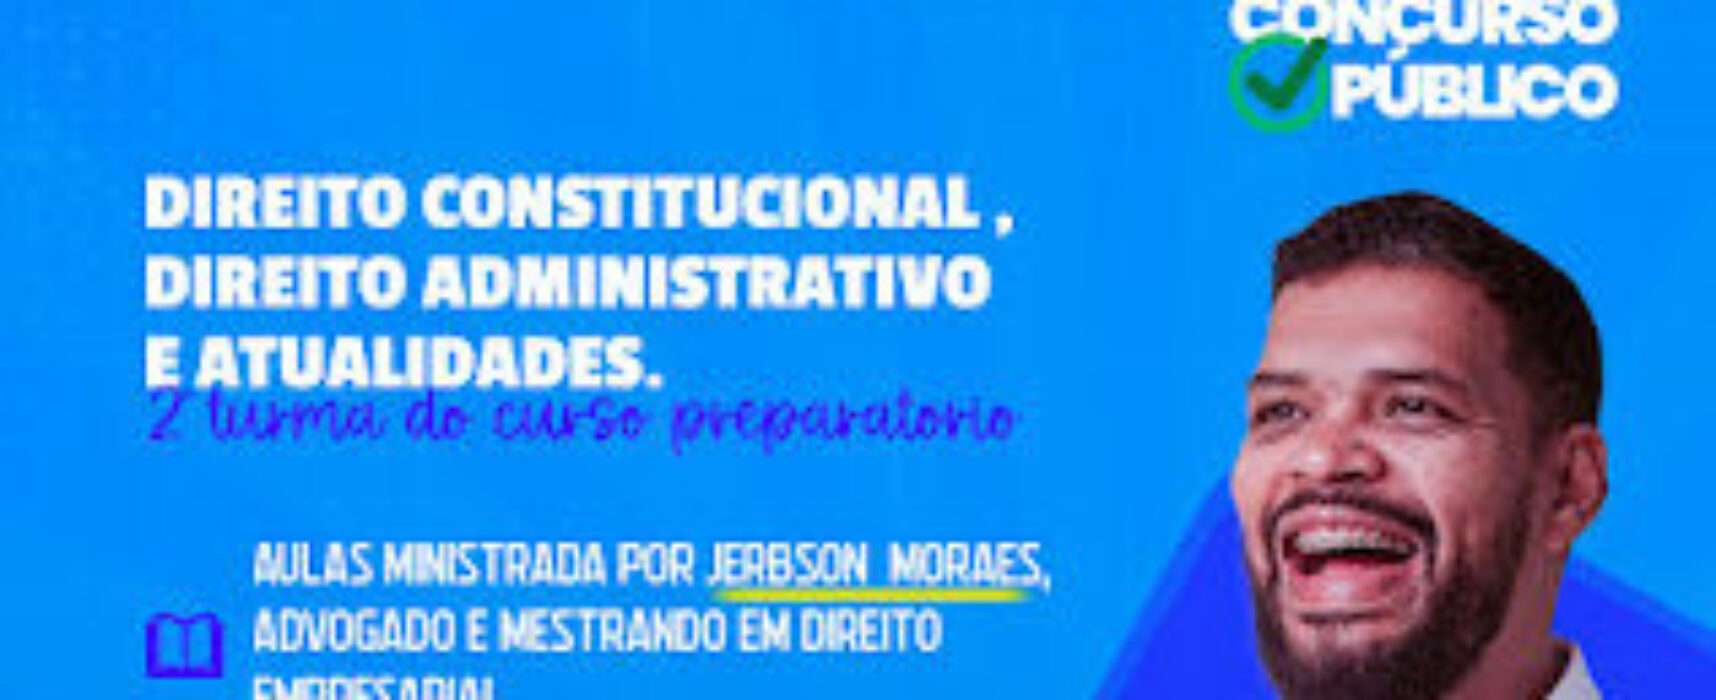 Inscrições Abertas: Garanta Sua Vaga na 2ª Turma do Curso Preparatório Gratuito de Jerbson Moraes